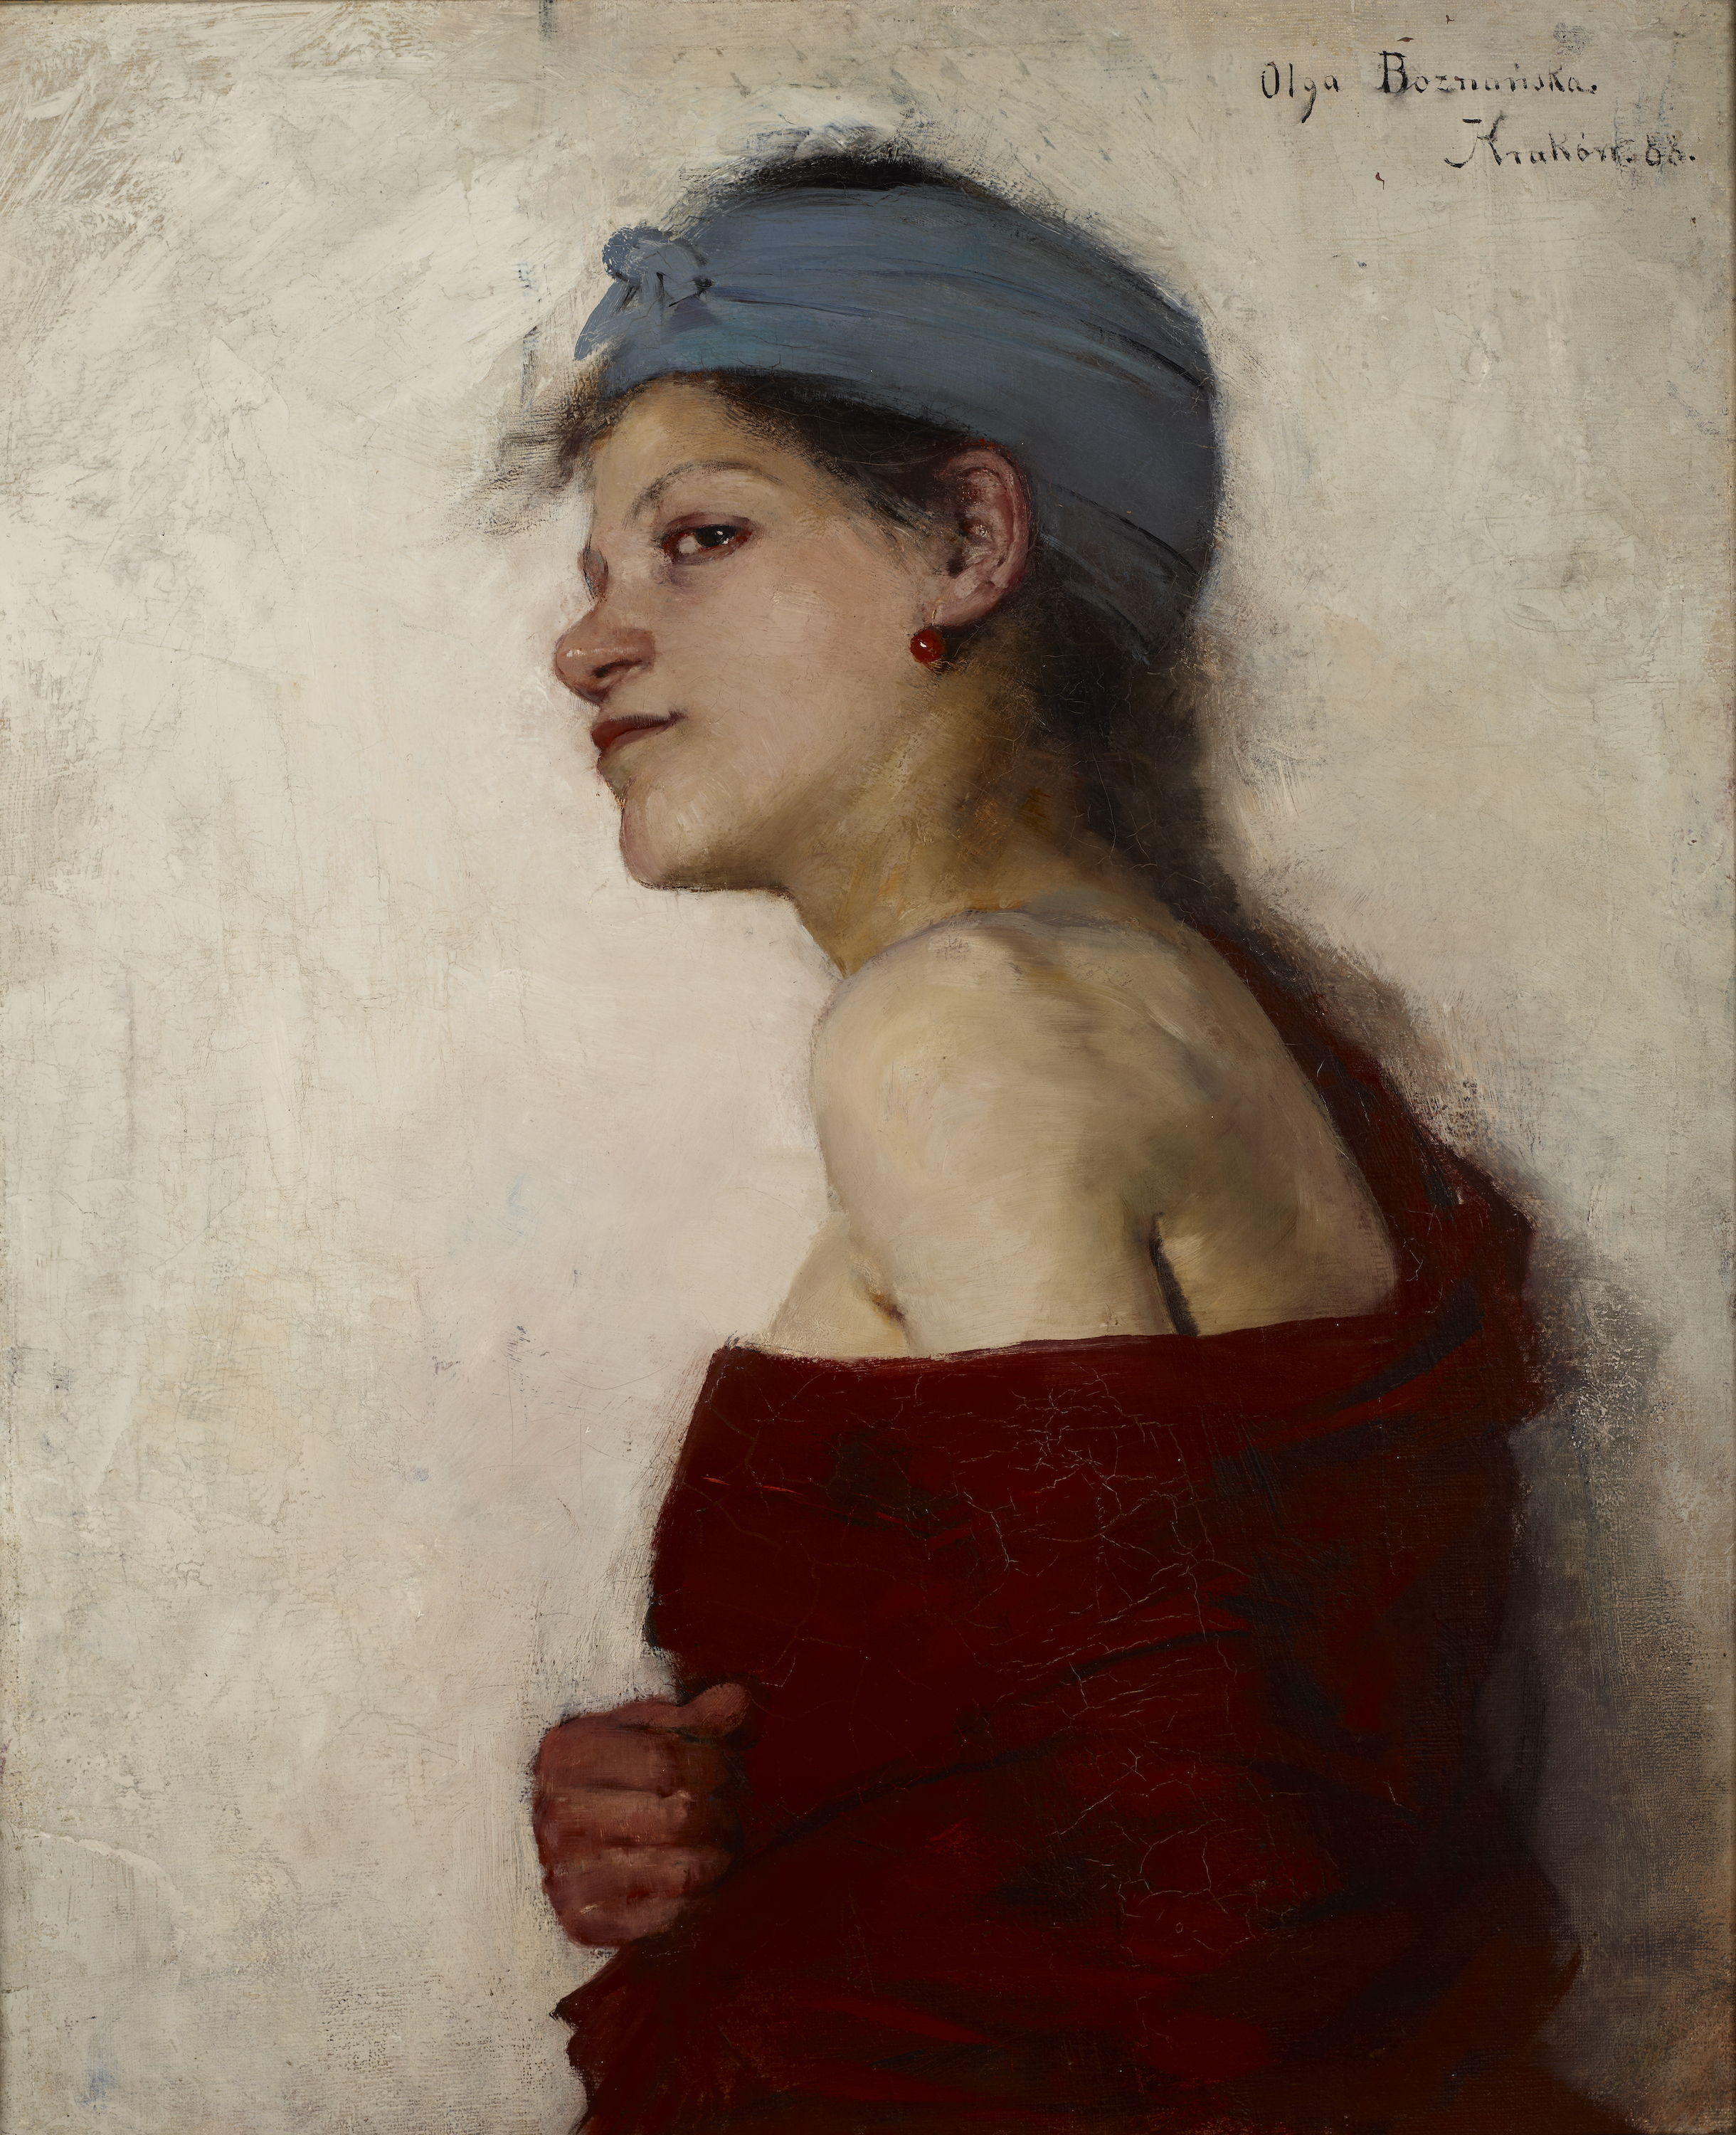 Weibliches Porträt (Zigeunerin) by Olga Boznańska - 1888 - 65 x 53 cm Nationalmuseum Krakau